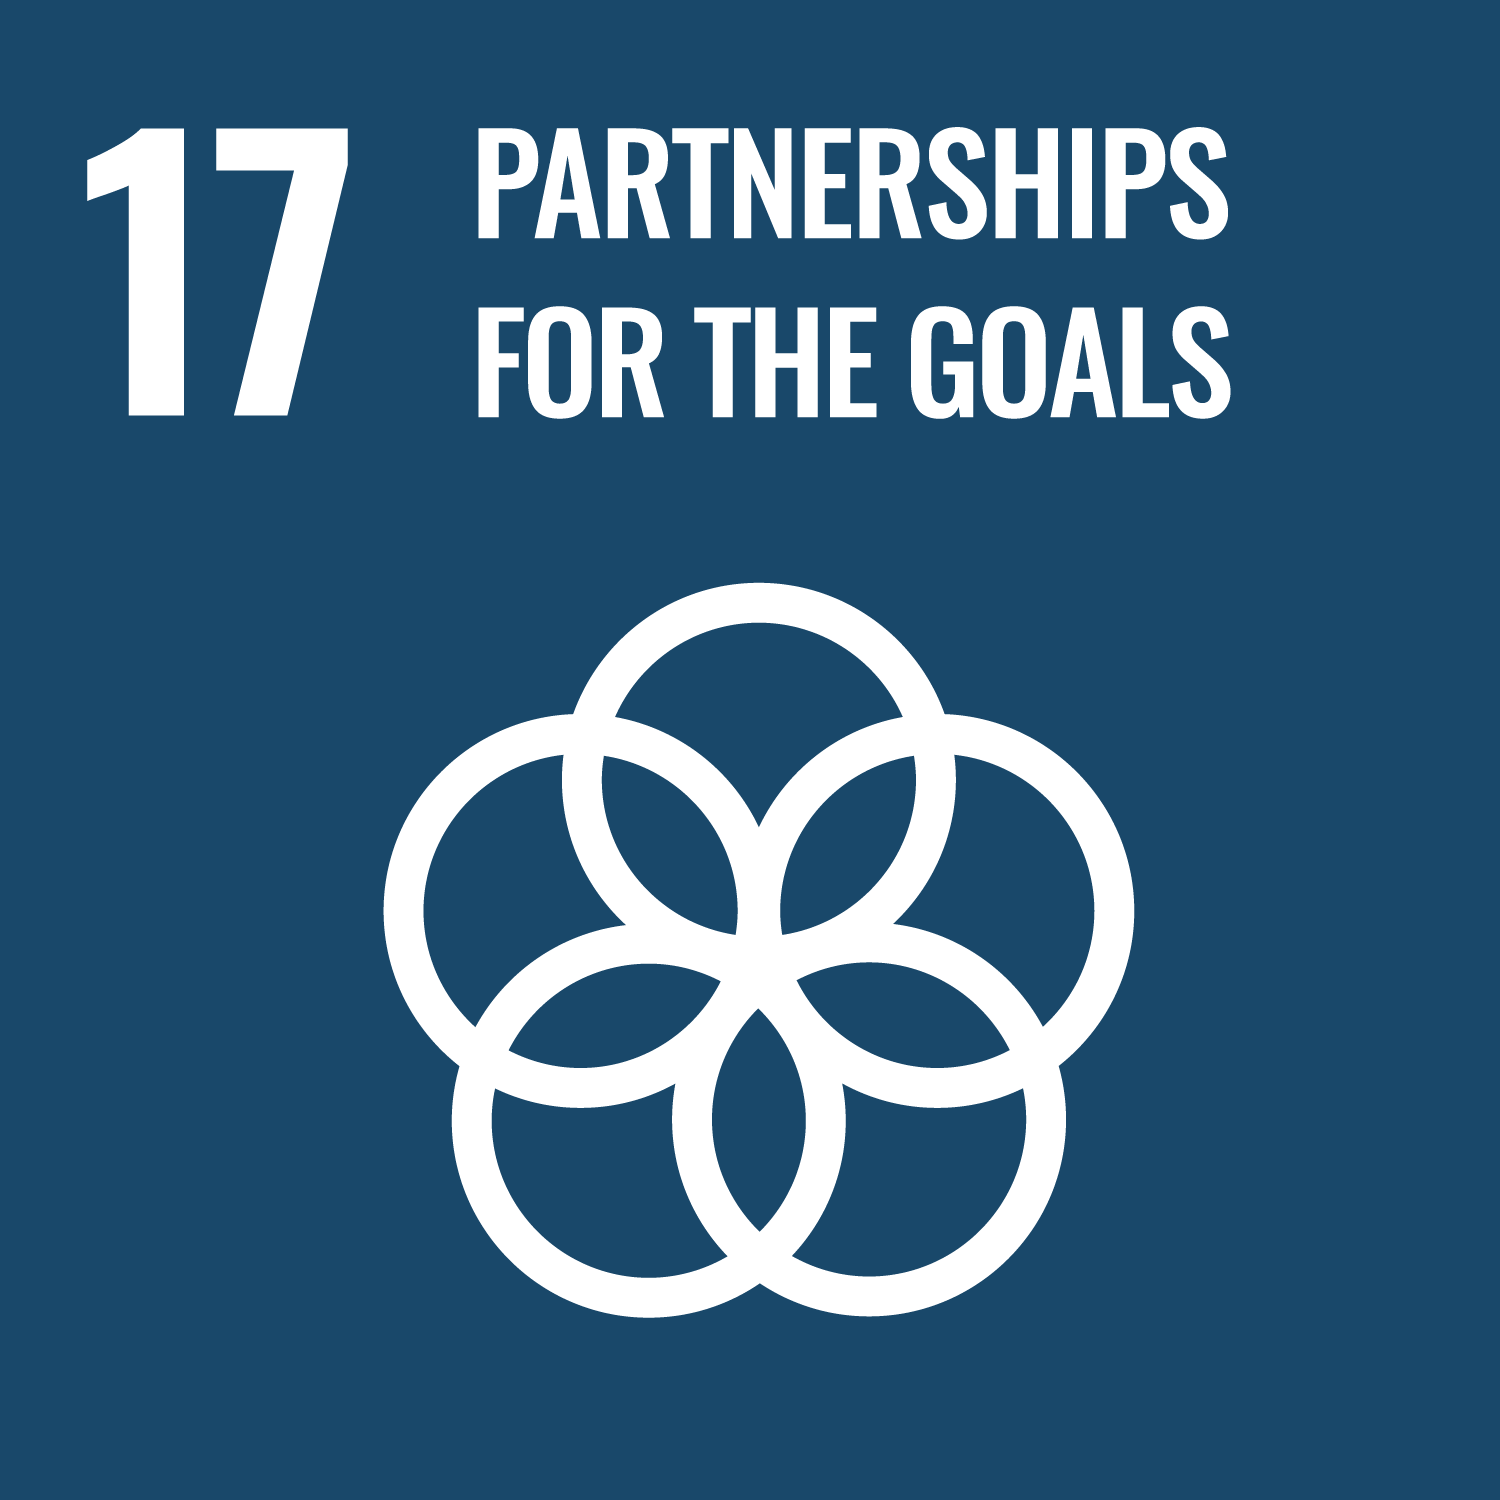 Social Development Goal: Partnerships for the goals